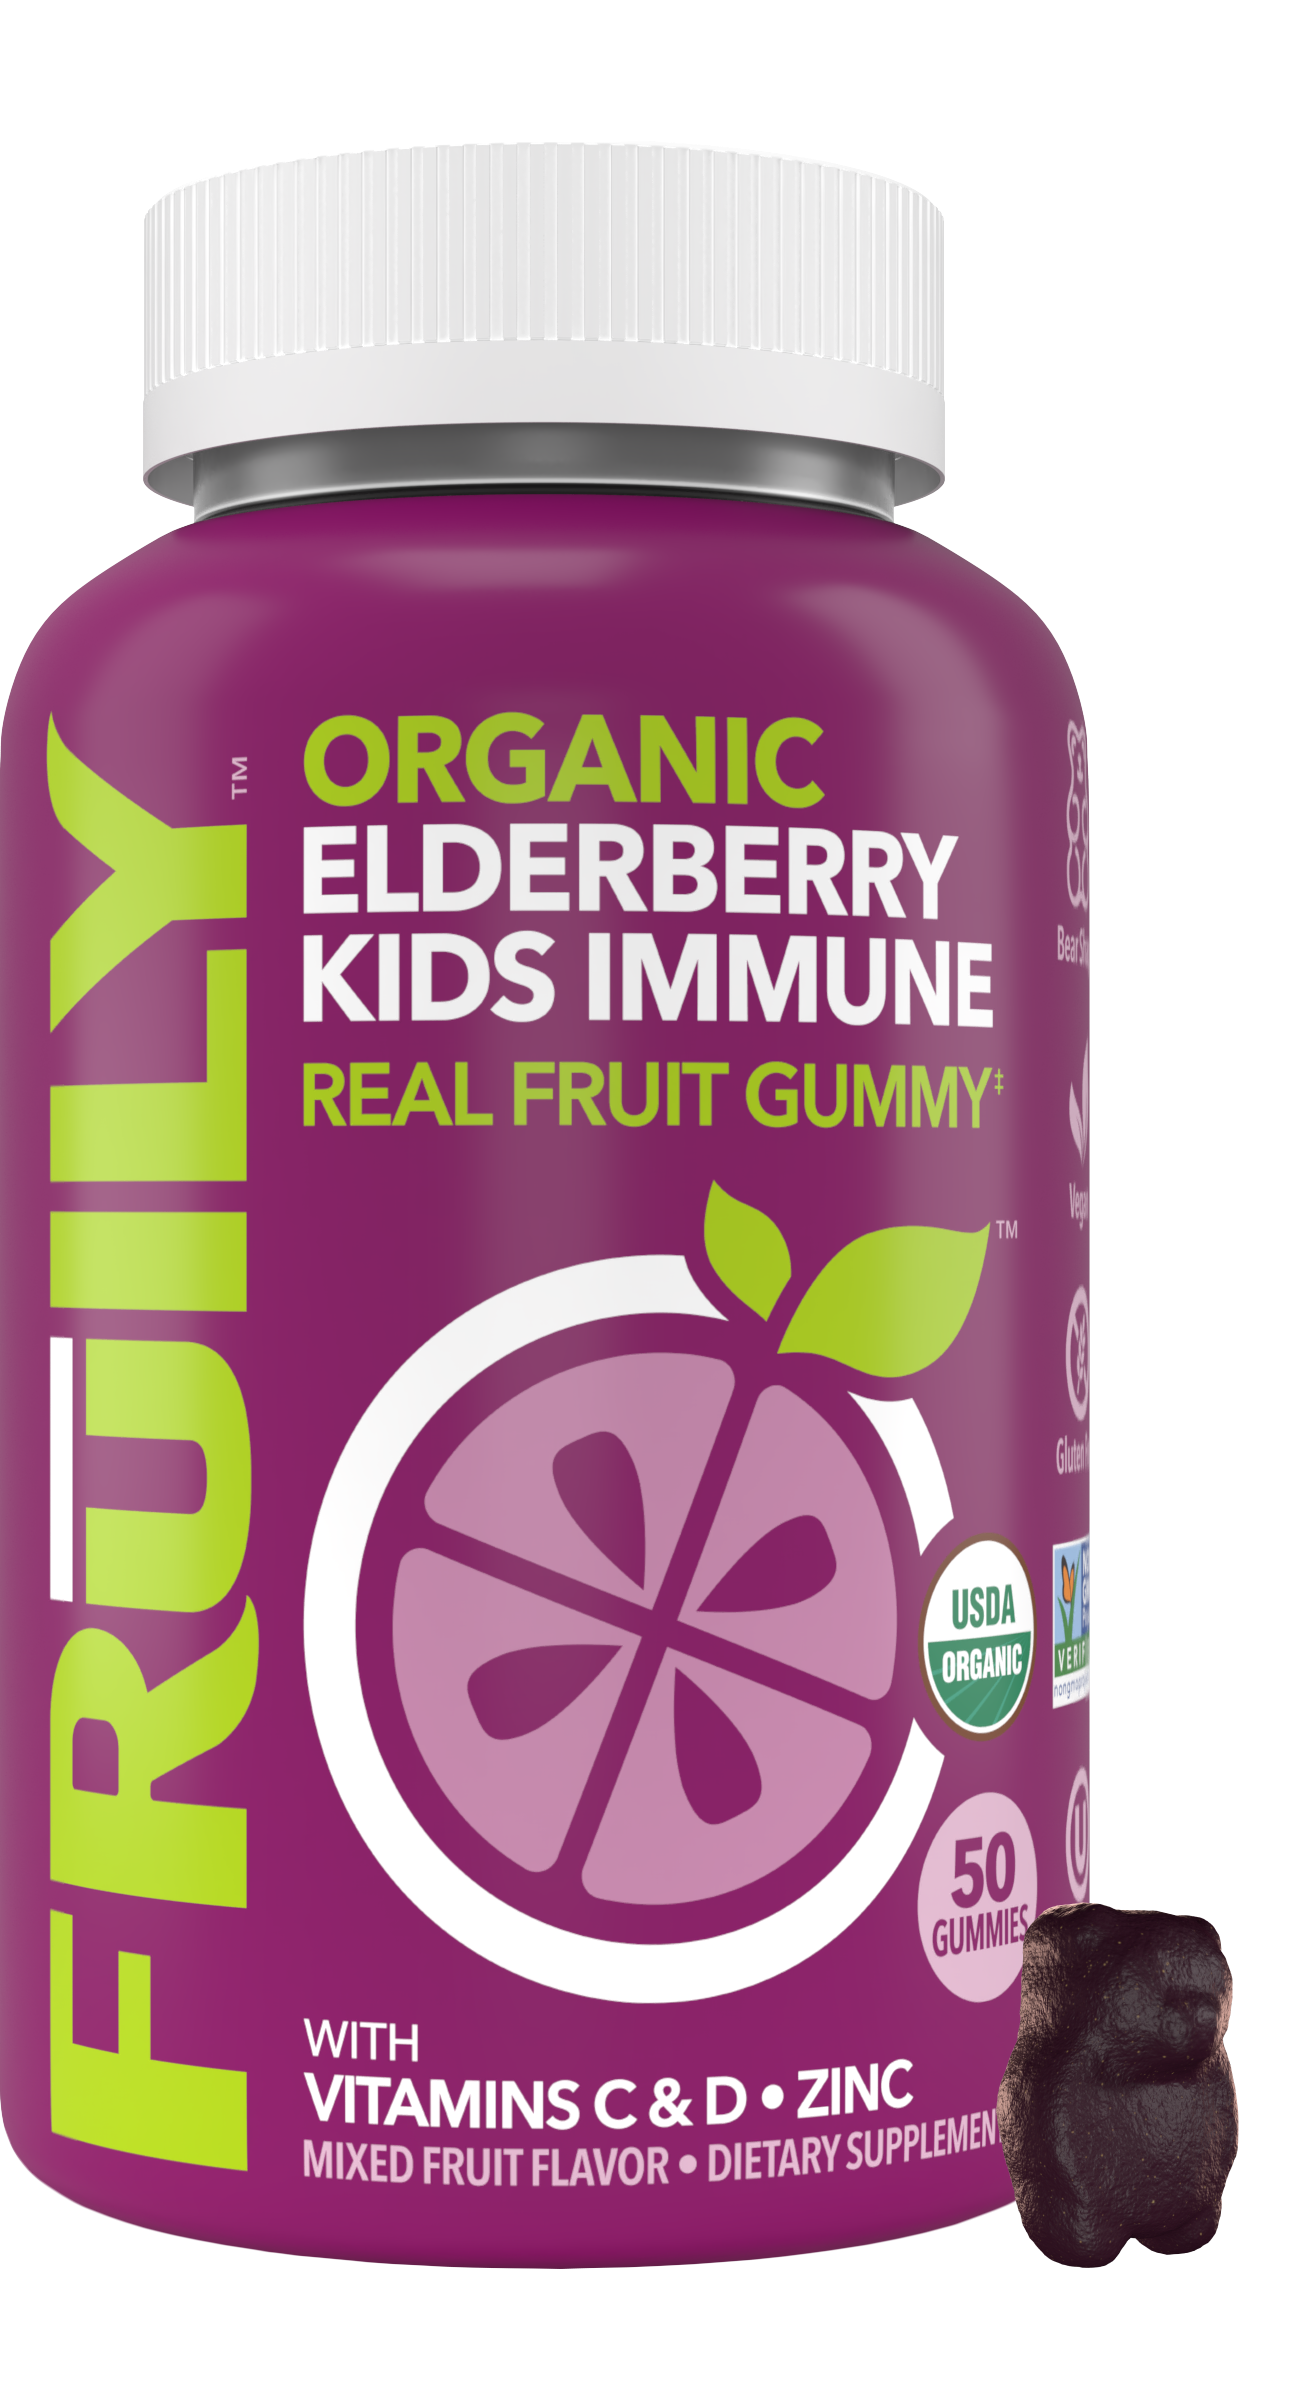 Elderberry Kids Immune